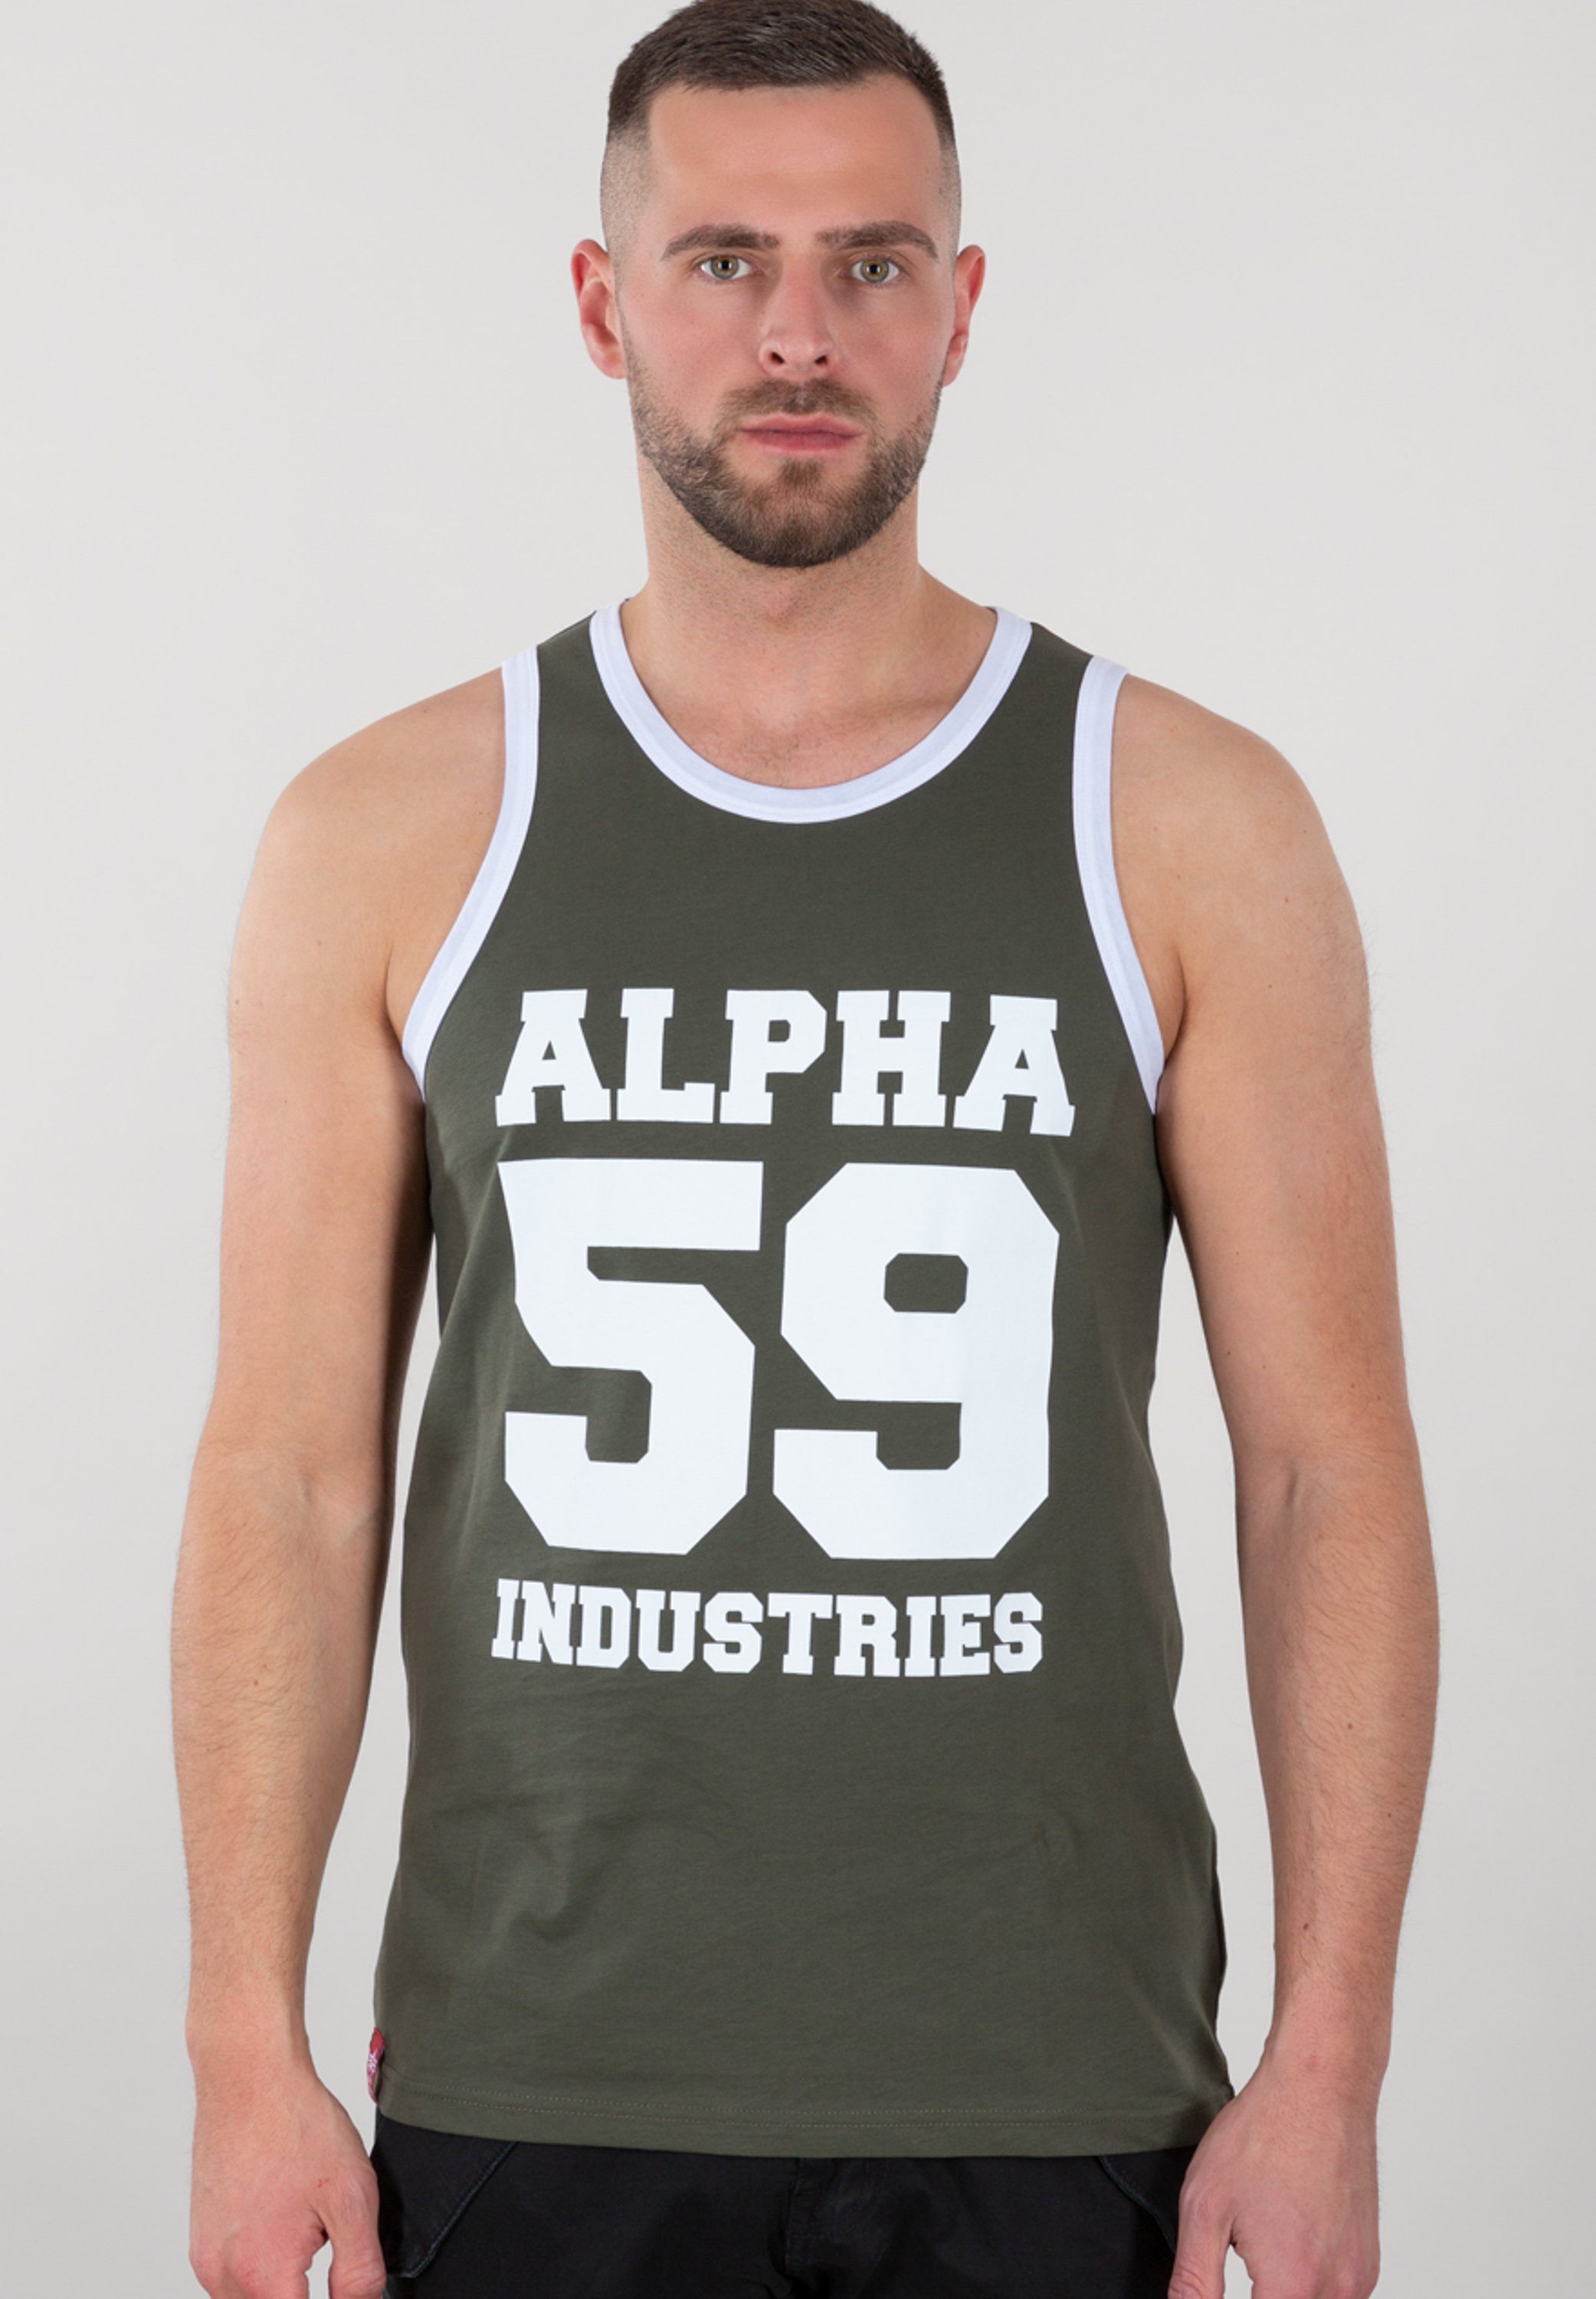 Alpha Industries Muscle-shirt Men Tank Tops 59 Tank